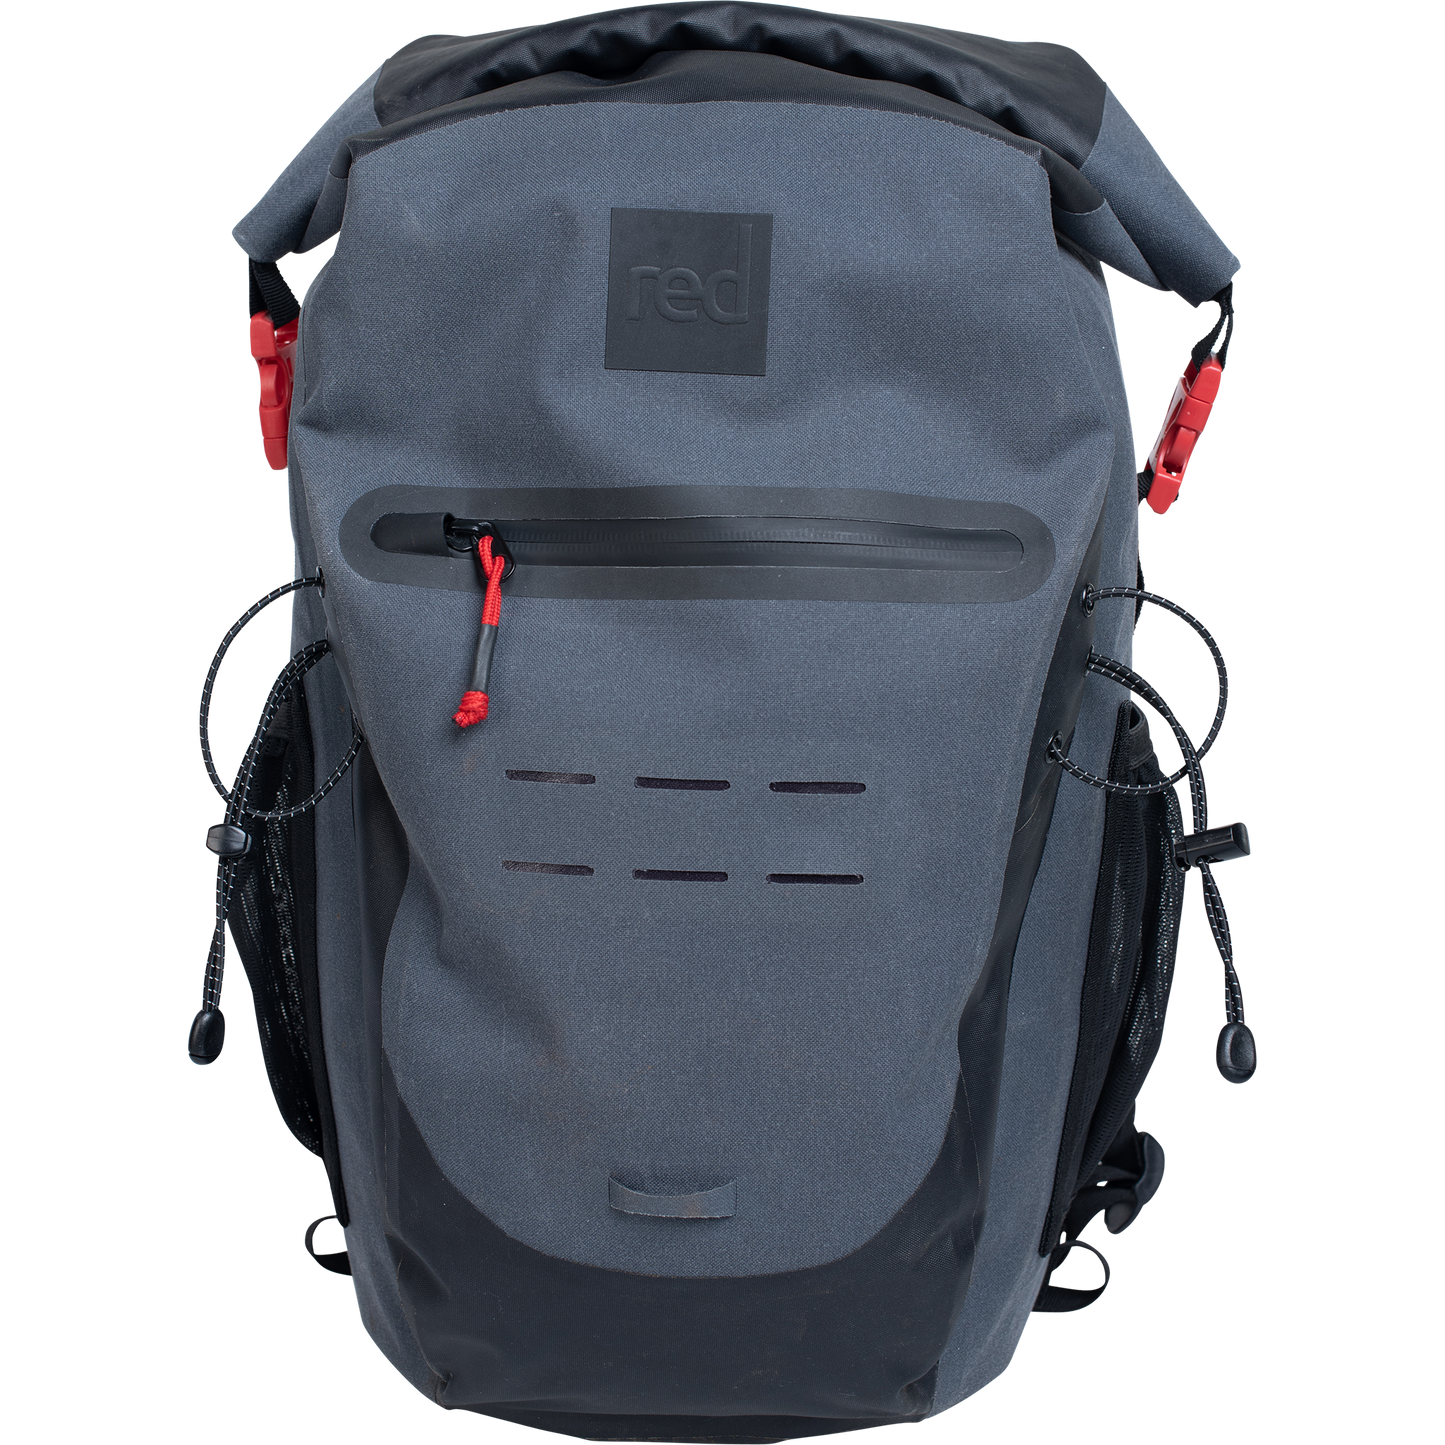 Red Original Waterproof Backpack